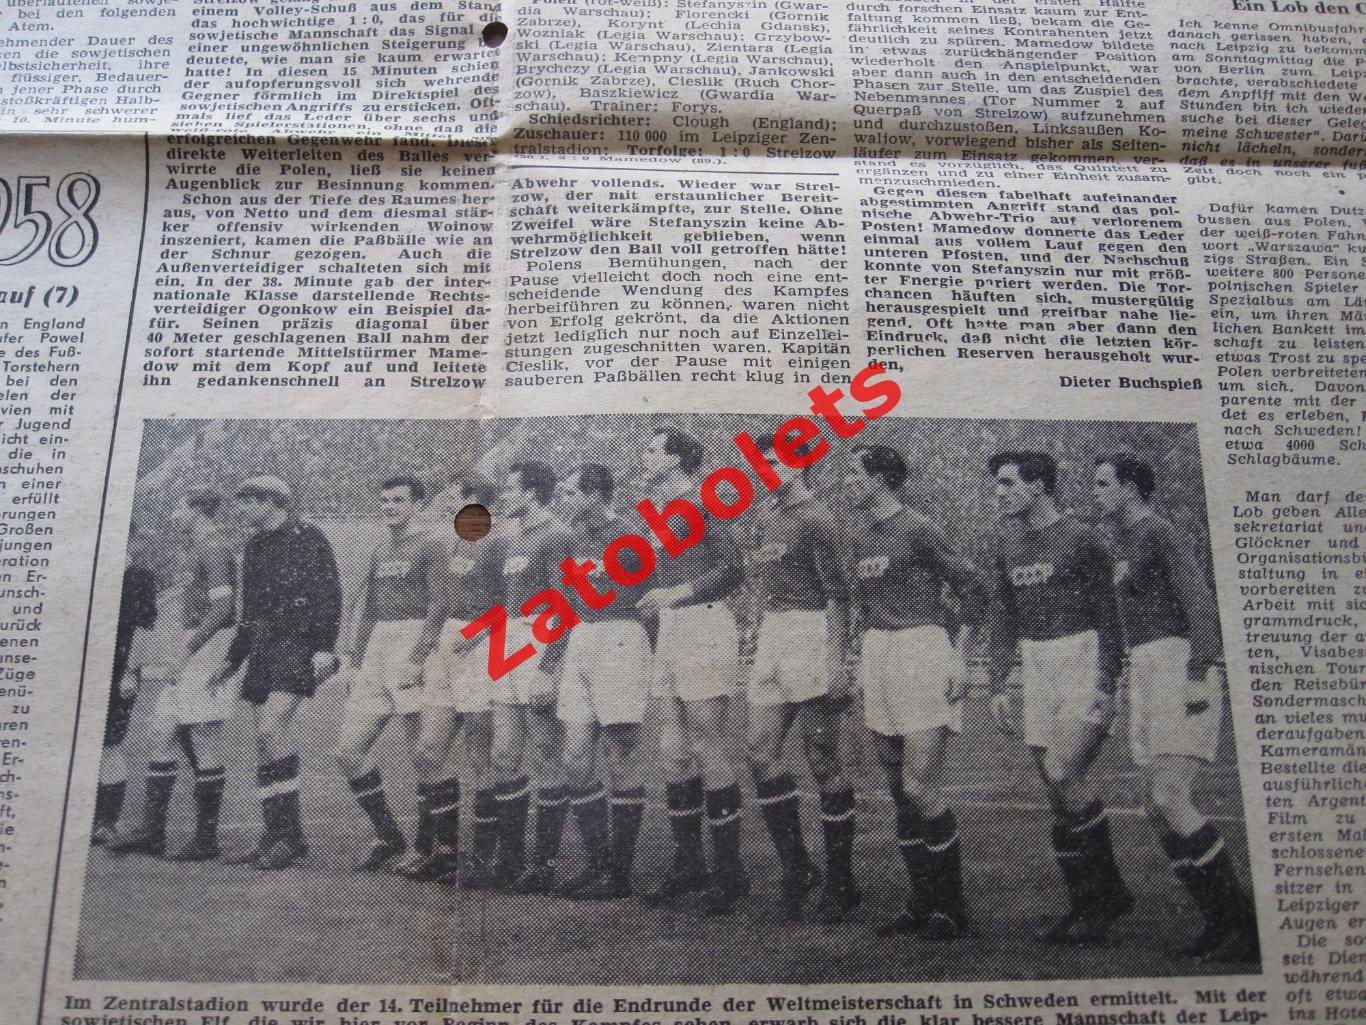 СССР - Польша 1957 Разворот газеты Fussball woche с отчетом о матче в Лейпциге 3